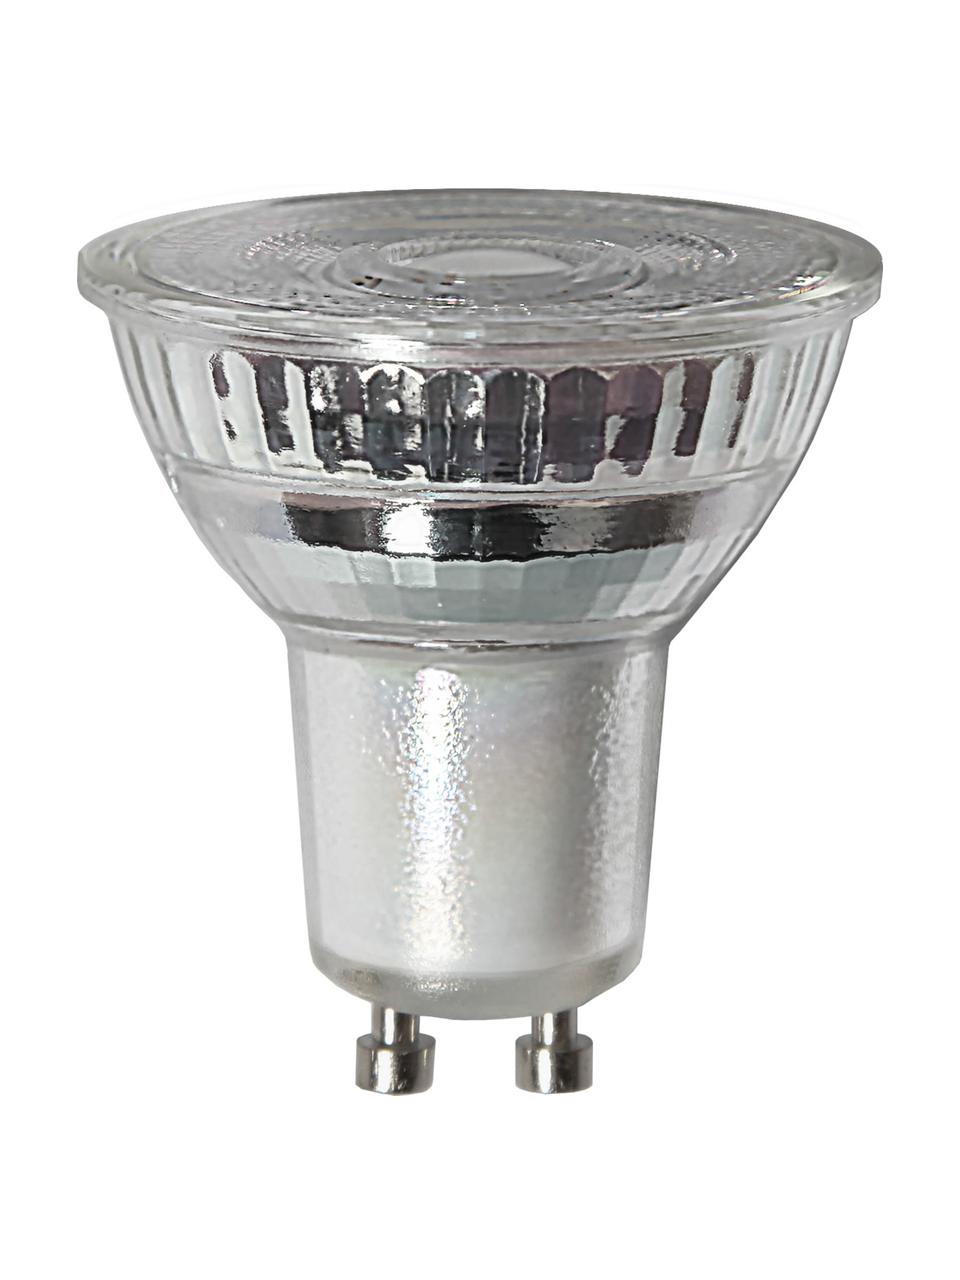 GU10 Leuchtmittel, 400lm, dimmbar, warmweiß, 1 Stück, Leuchtmittelschirm: Glas, Leuchtmittelfassung: Aluminium, Transparent, Ø 5 x H 5 cm